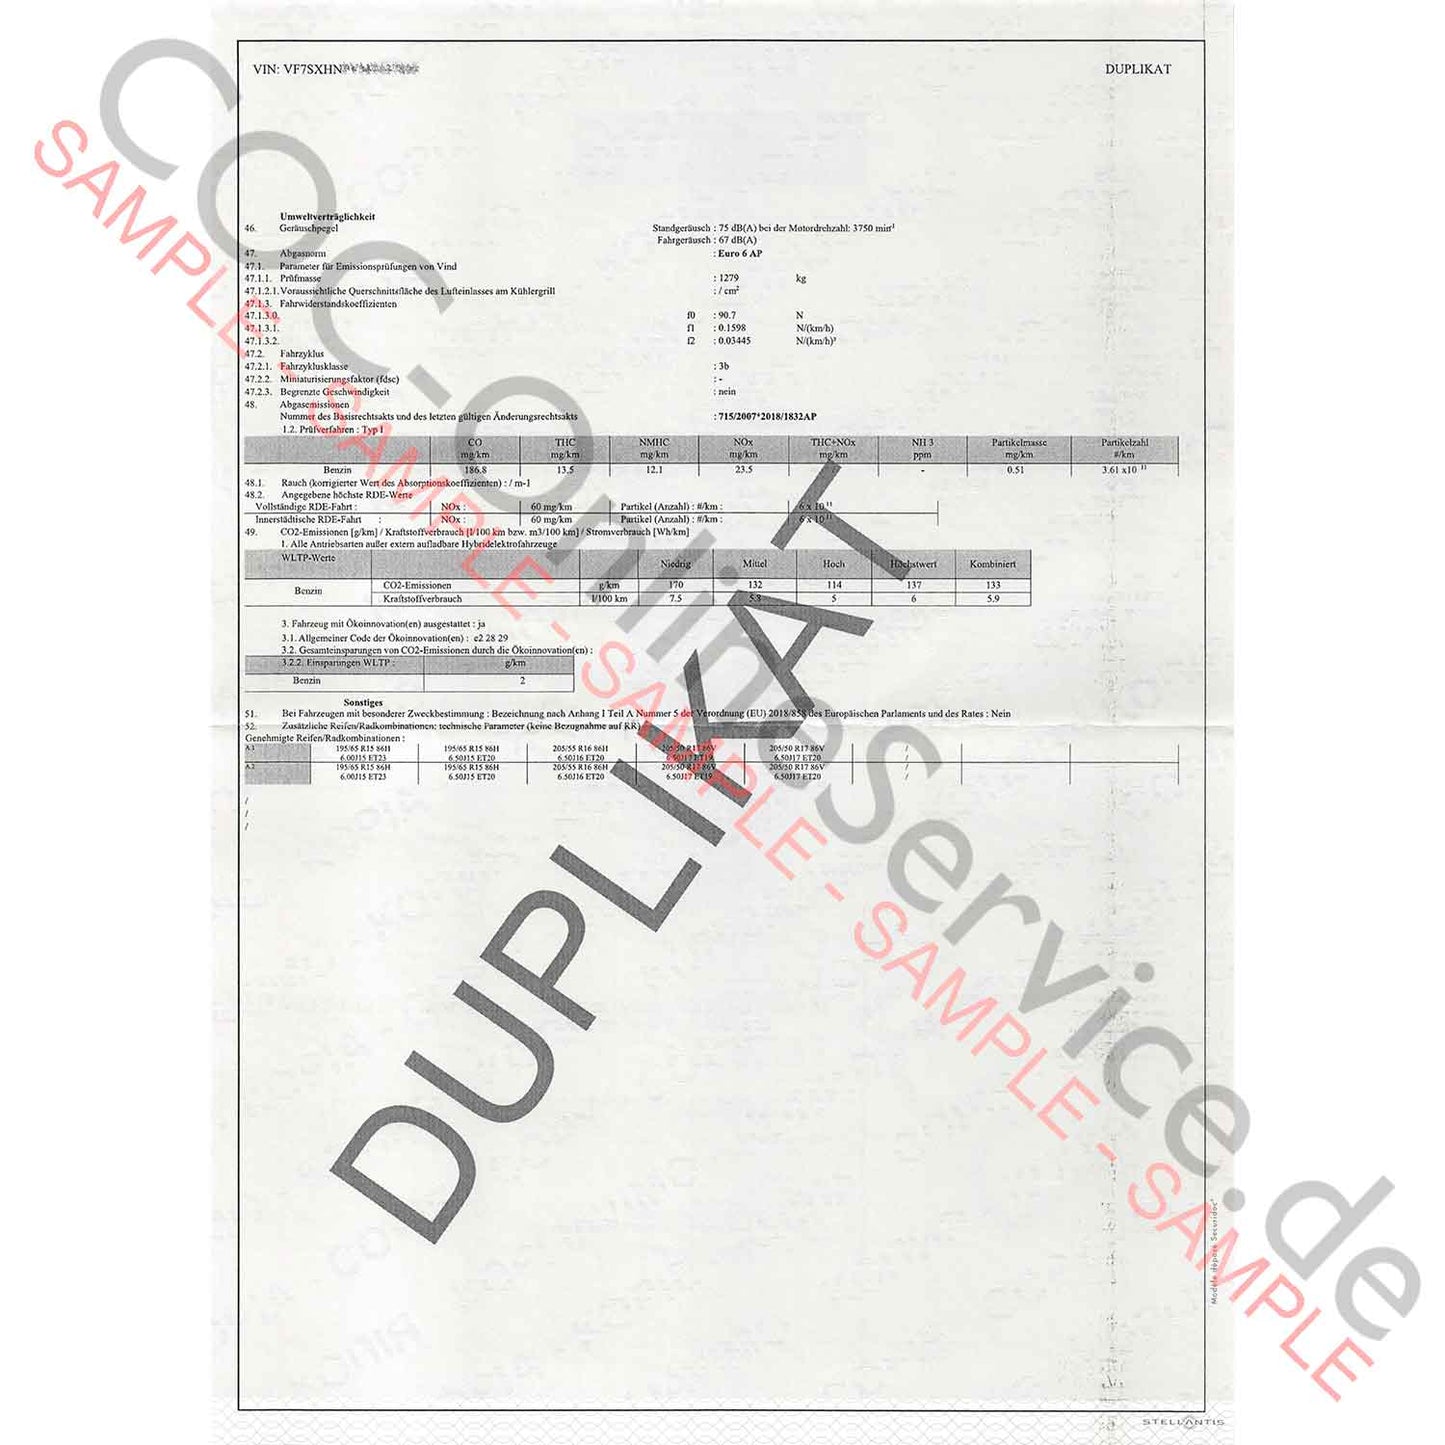 COC Papiere für Citroën (Certificate of Conformity)